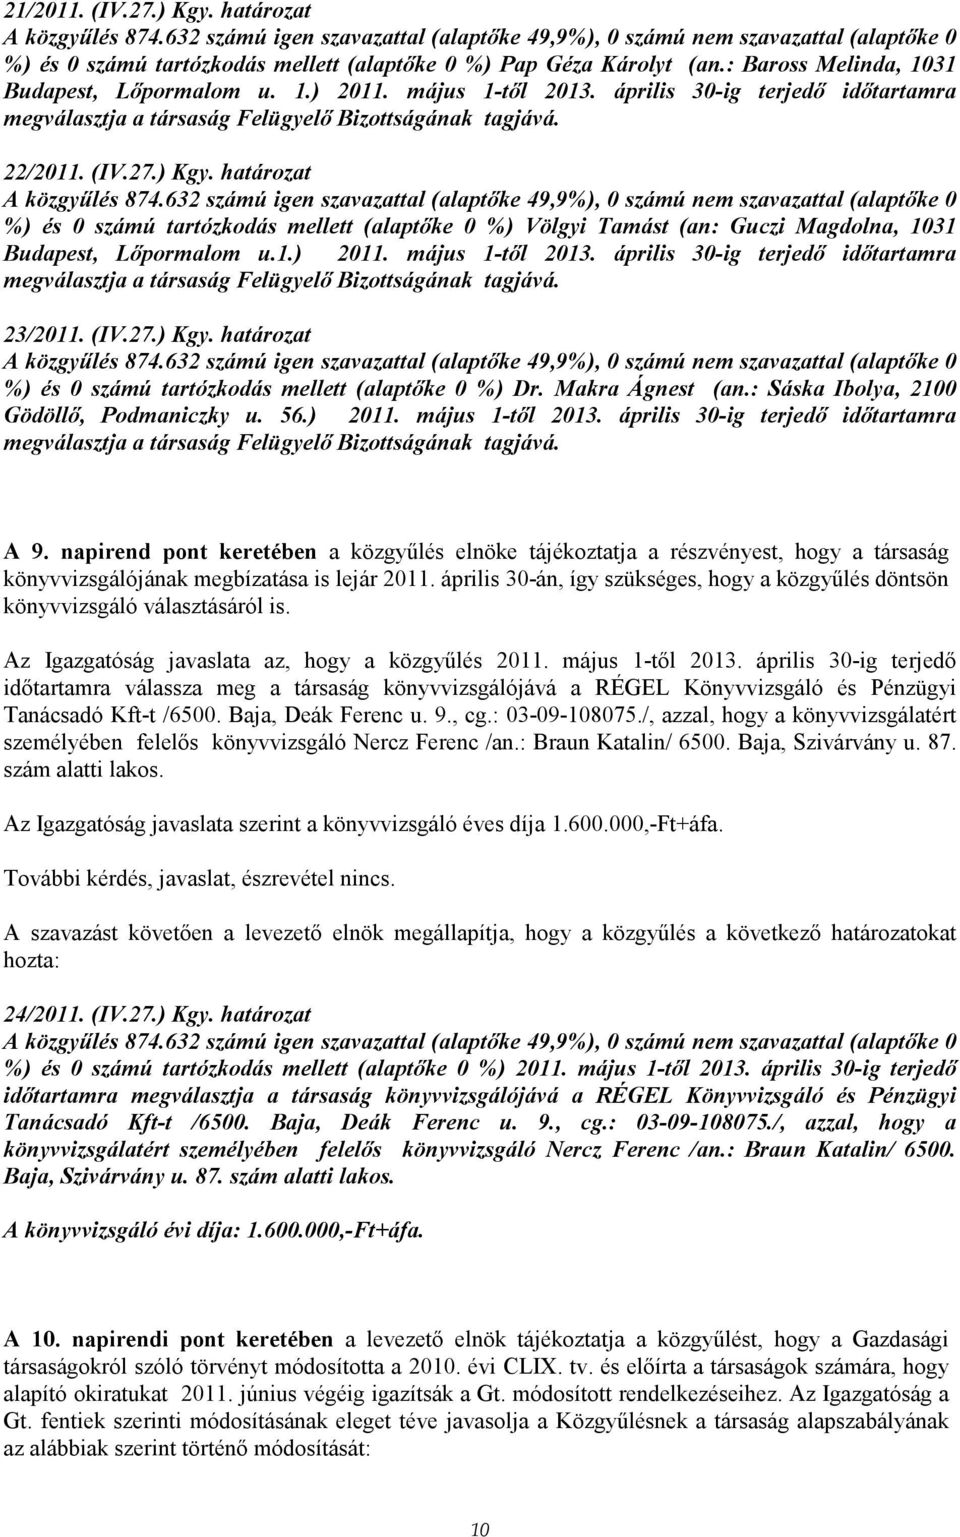 határozat %) és 0 számú tartózkodás mellett (alaptıke 0 %) Völgyi Tamást (an: Guczi Magdolna, 1031 Budapest, Lıpormalom u.1.) 2011. május 1-tıl 2013.